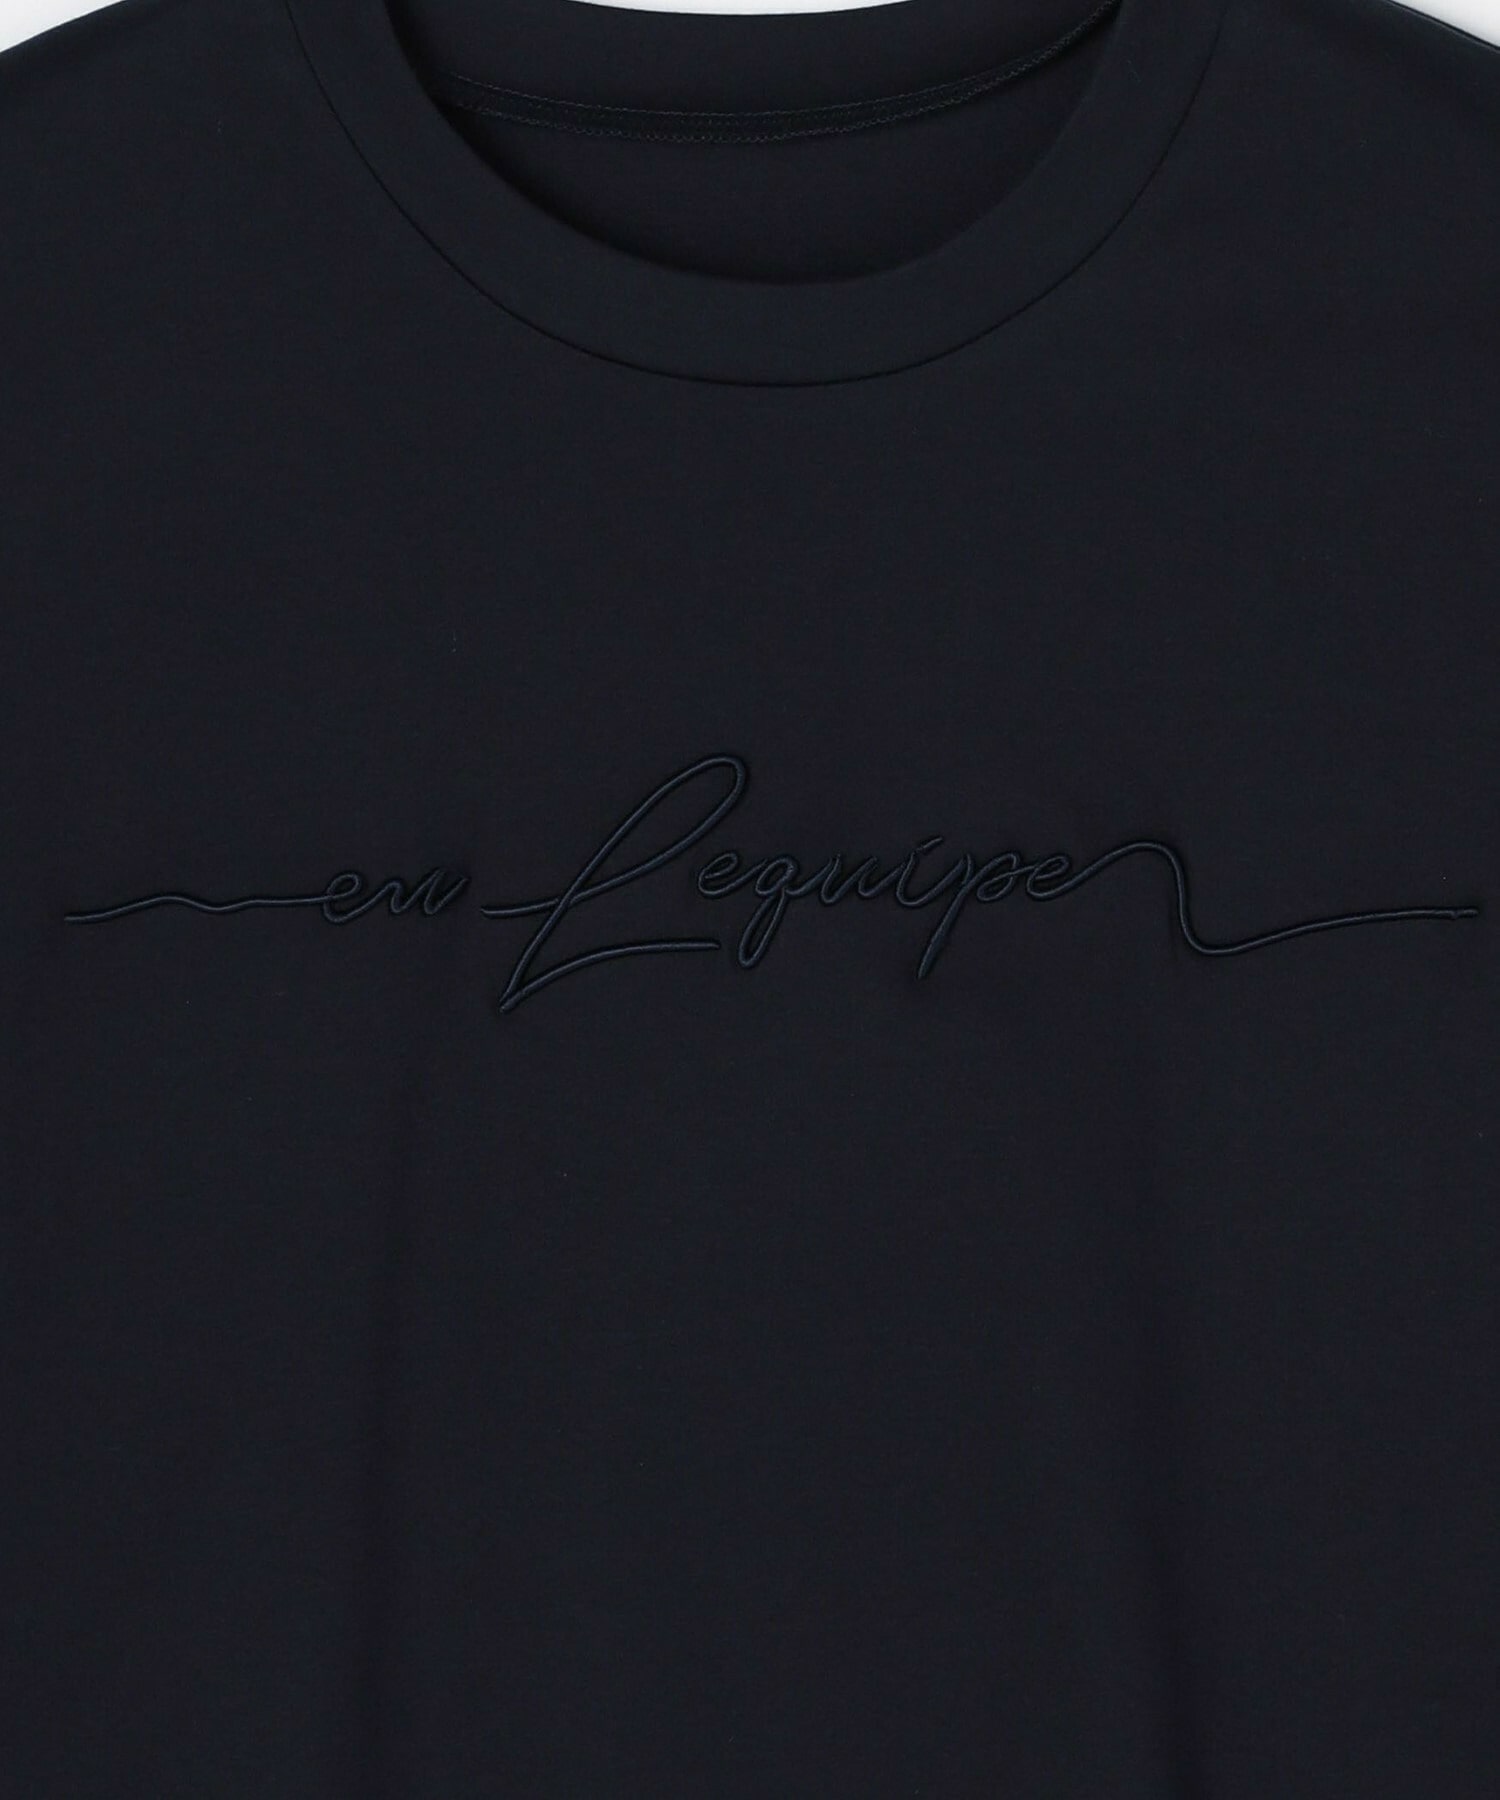 【L'EQUIPE】ロゴ刺繍Tシャツ 詳細画像 ネイビー 11